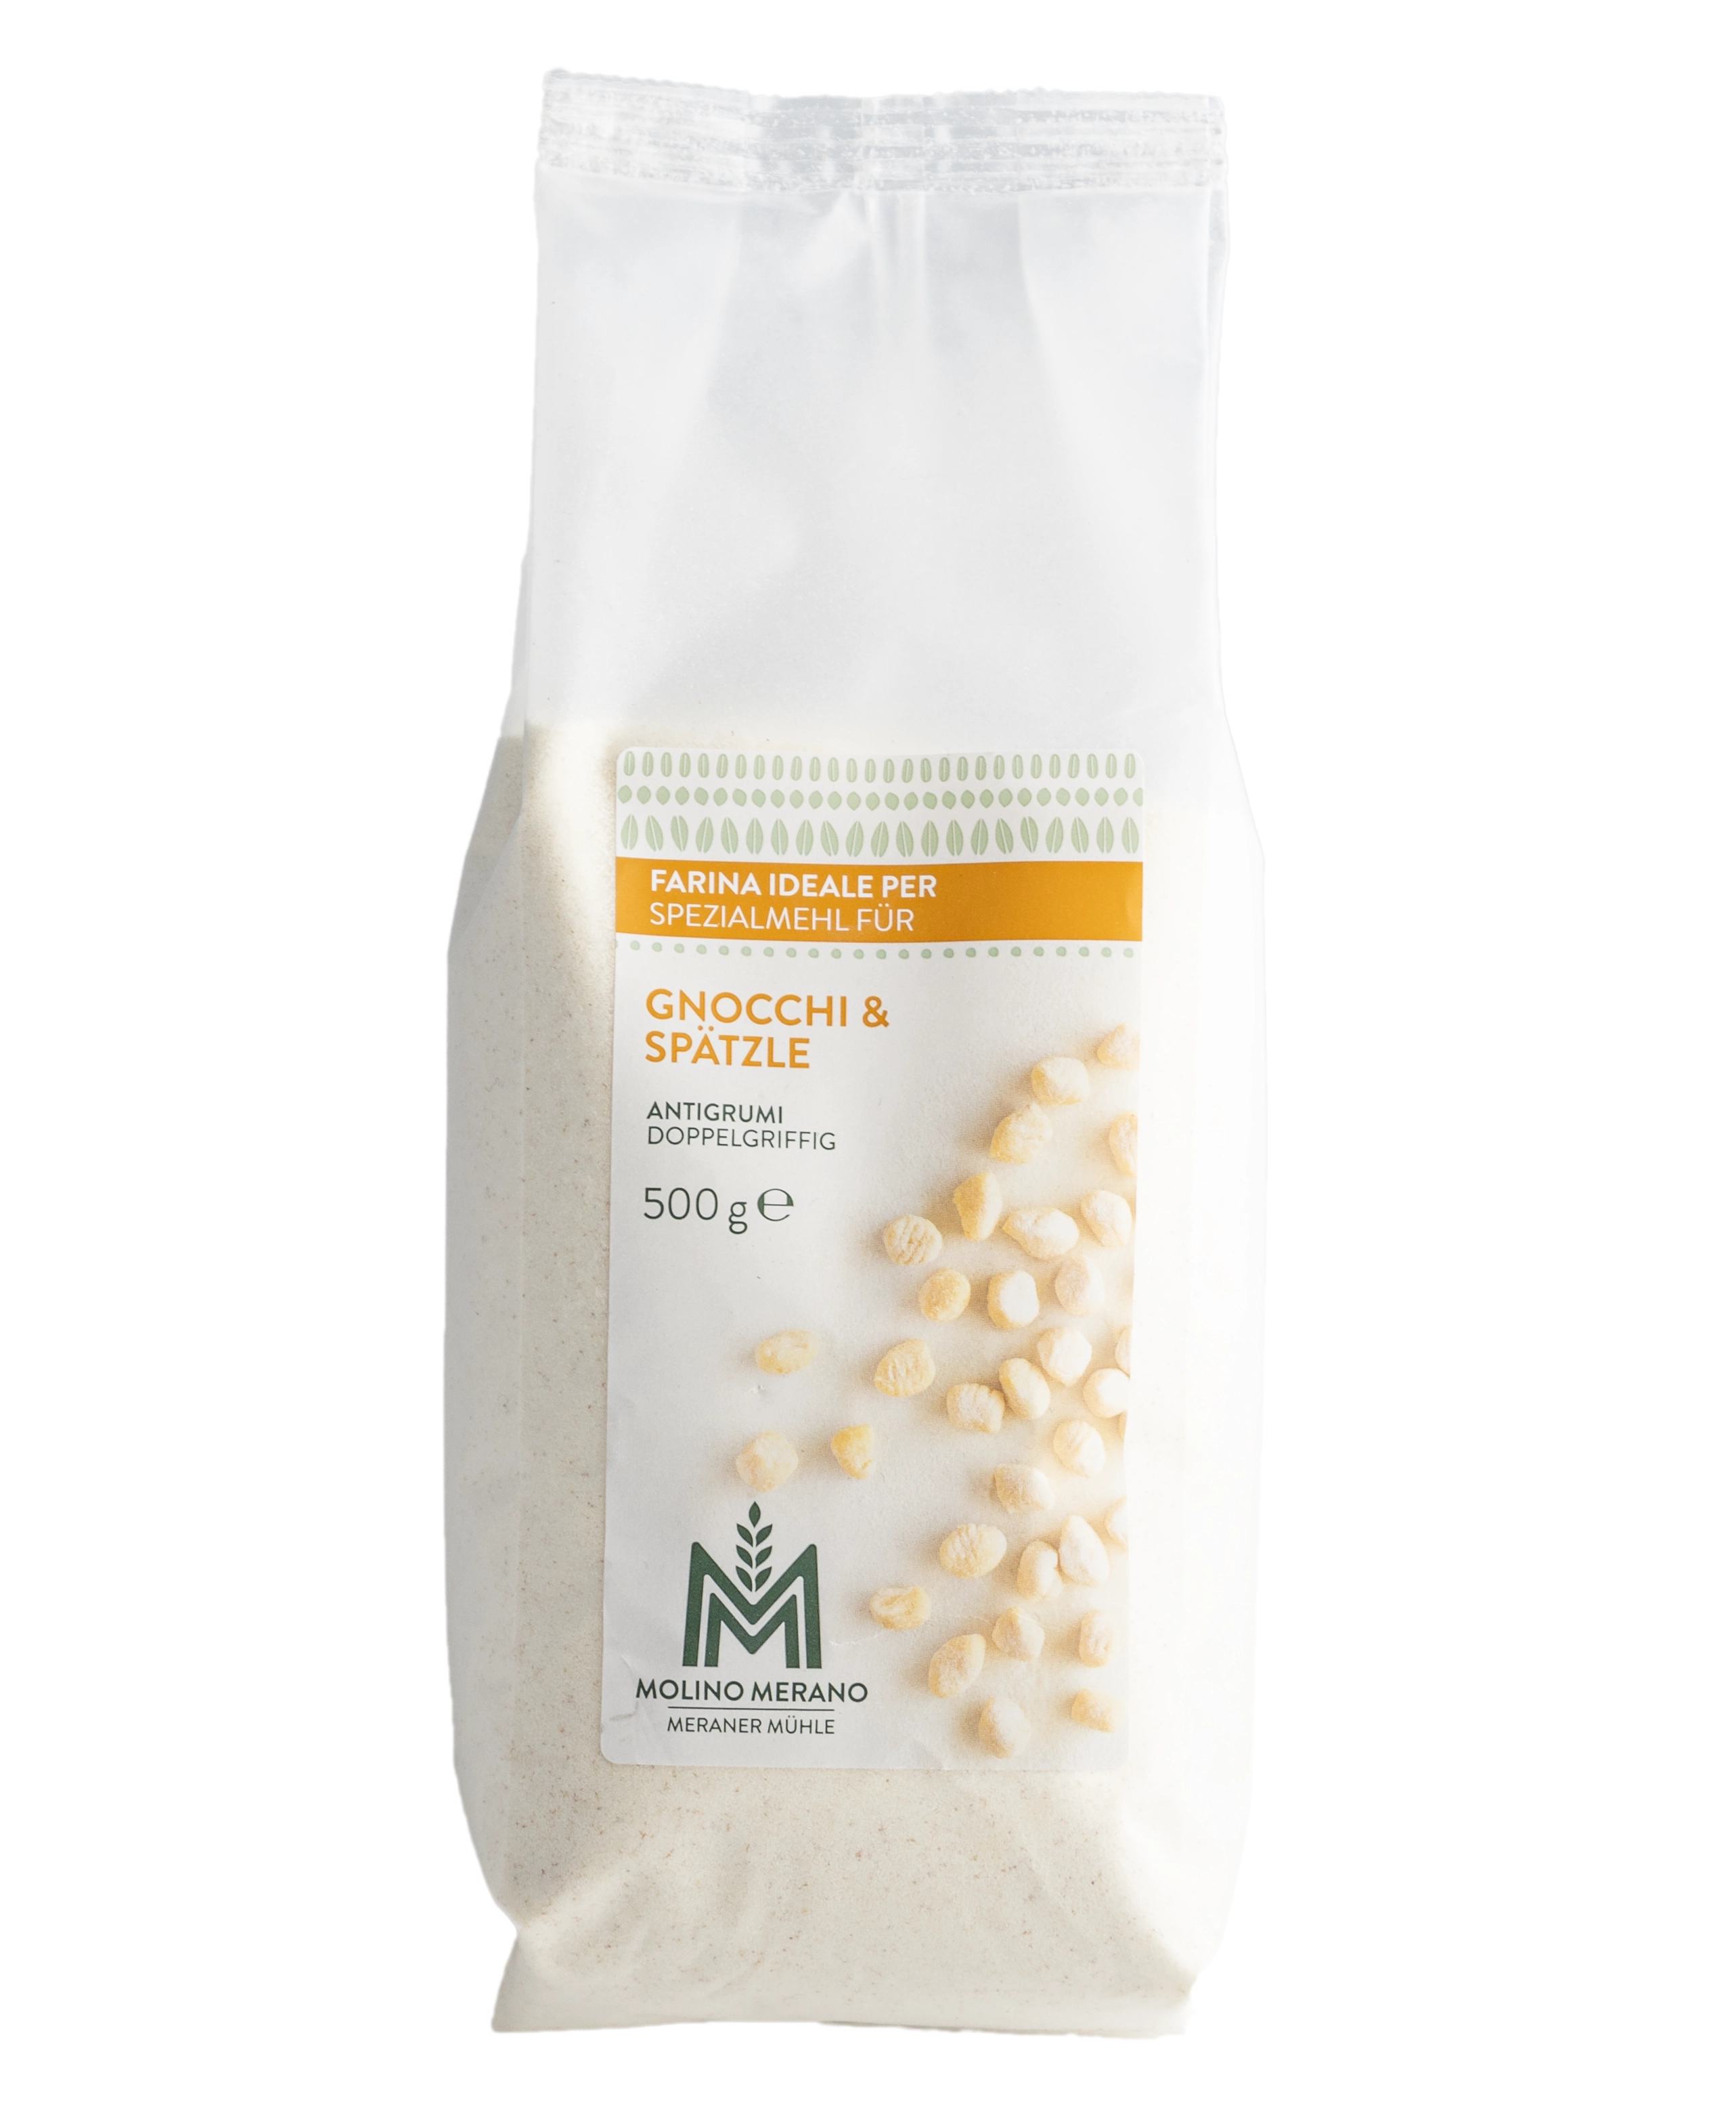 Organic special flour for gnocchi & spaetzle